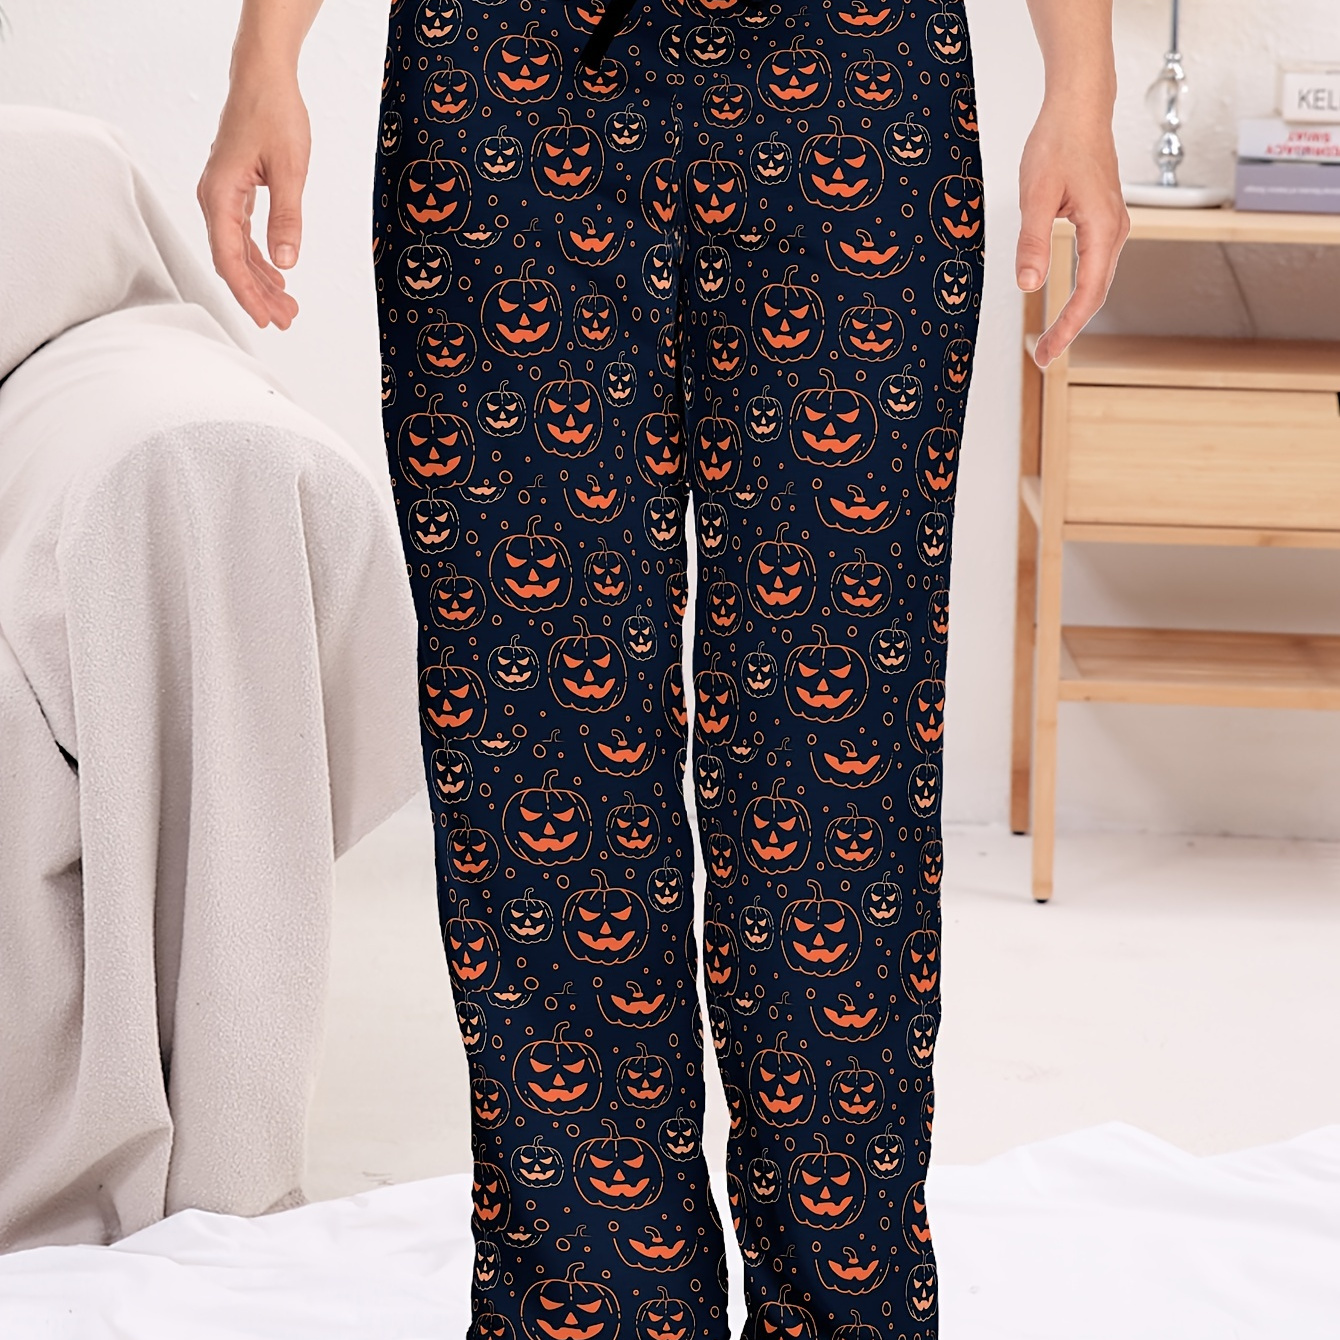 

Pumpkin Print Sleep Bottoms, Soft & Comfy Elastic Waist Pants, Women's Sleepwear & Loungewear